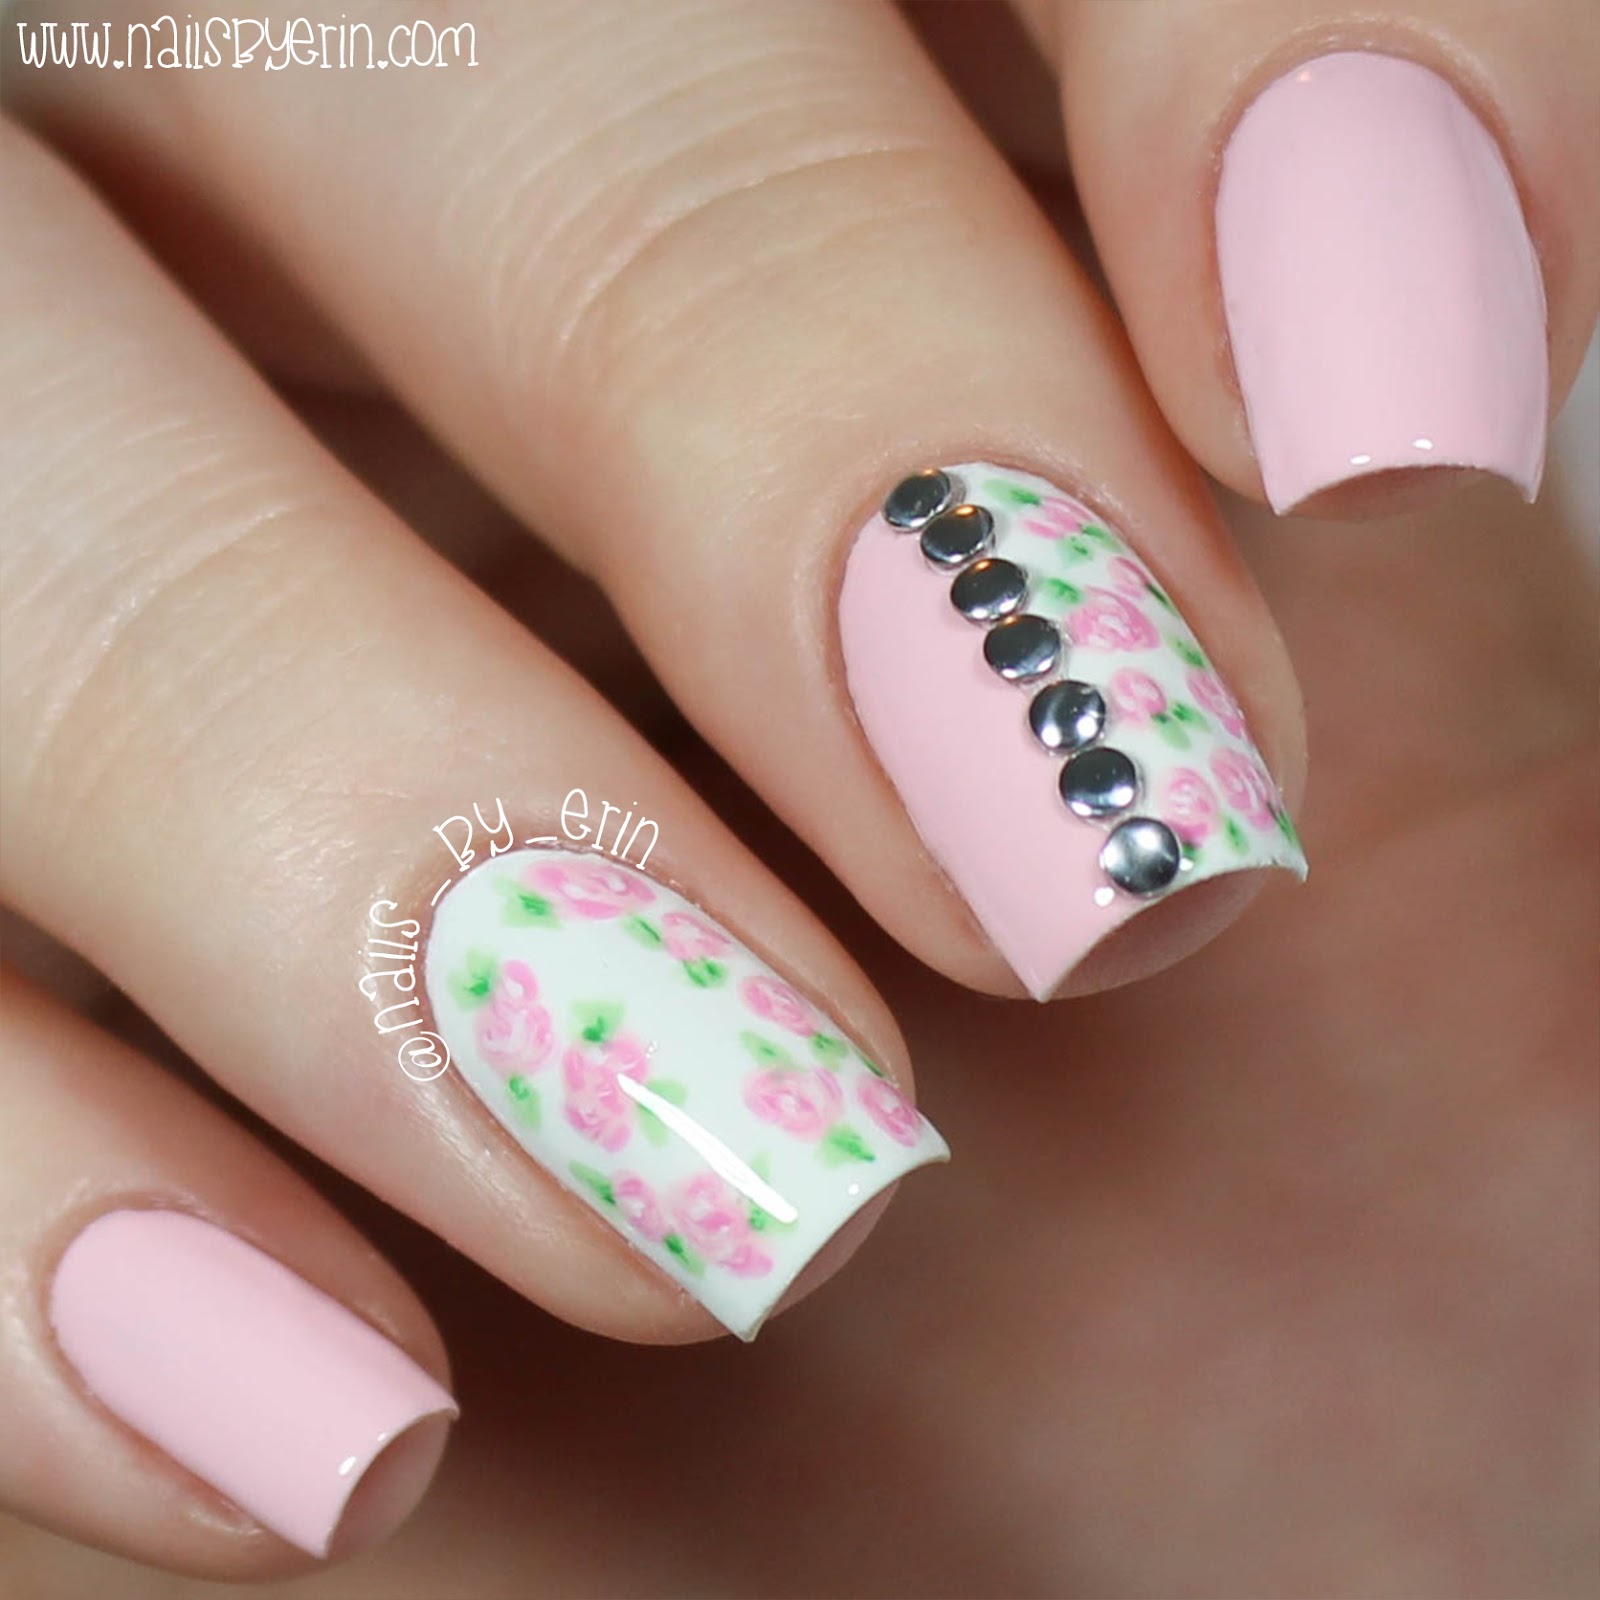 NailsByErin: Floral Studded Nails | Sally Beauty